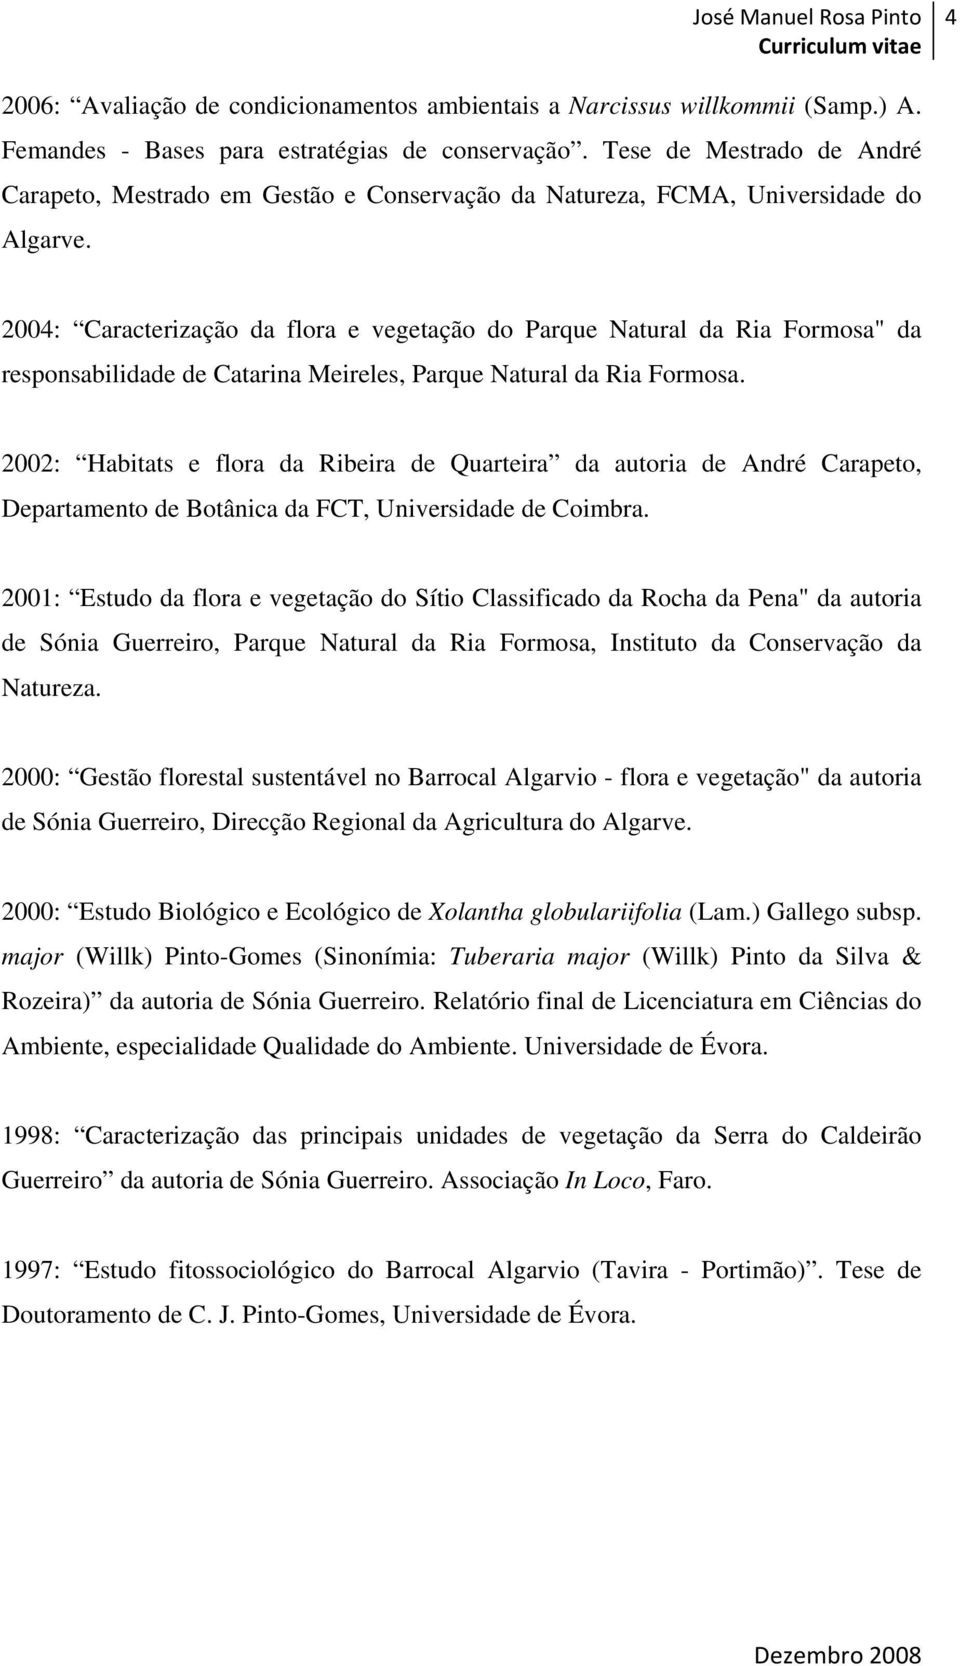 2004: Caracterização da flora e vegetação do Parque Natural da Ria Formosa" da responsabilidade de Catarina Meireles, Parque Natural da Ria Formosa.